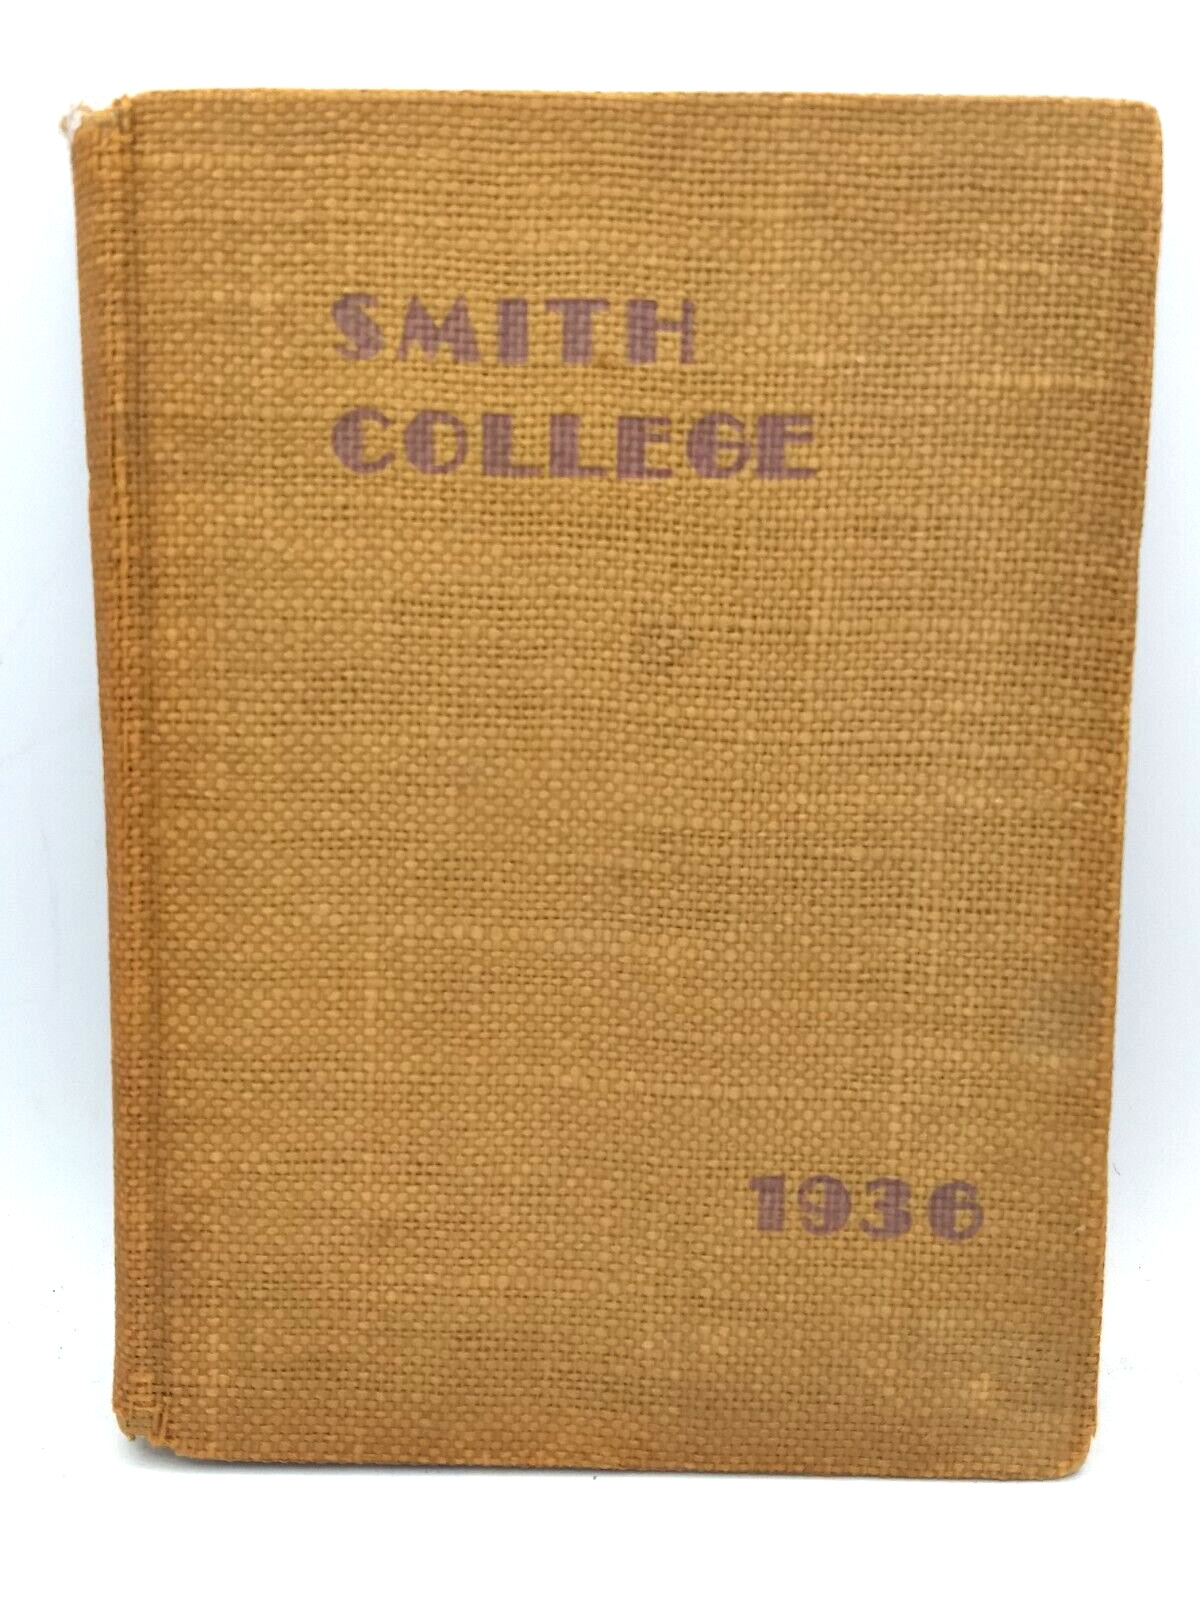 Smith College Yearbook, 1936, Northampton, Massachusetts, MA